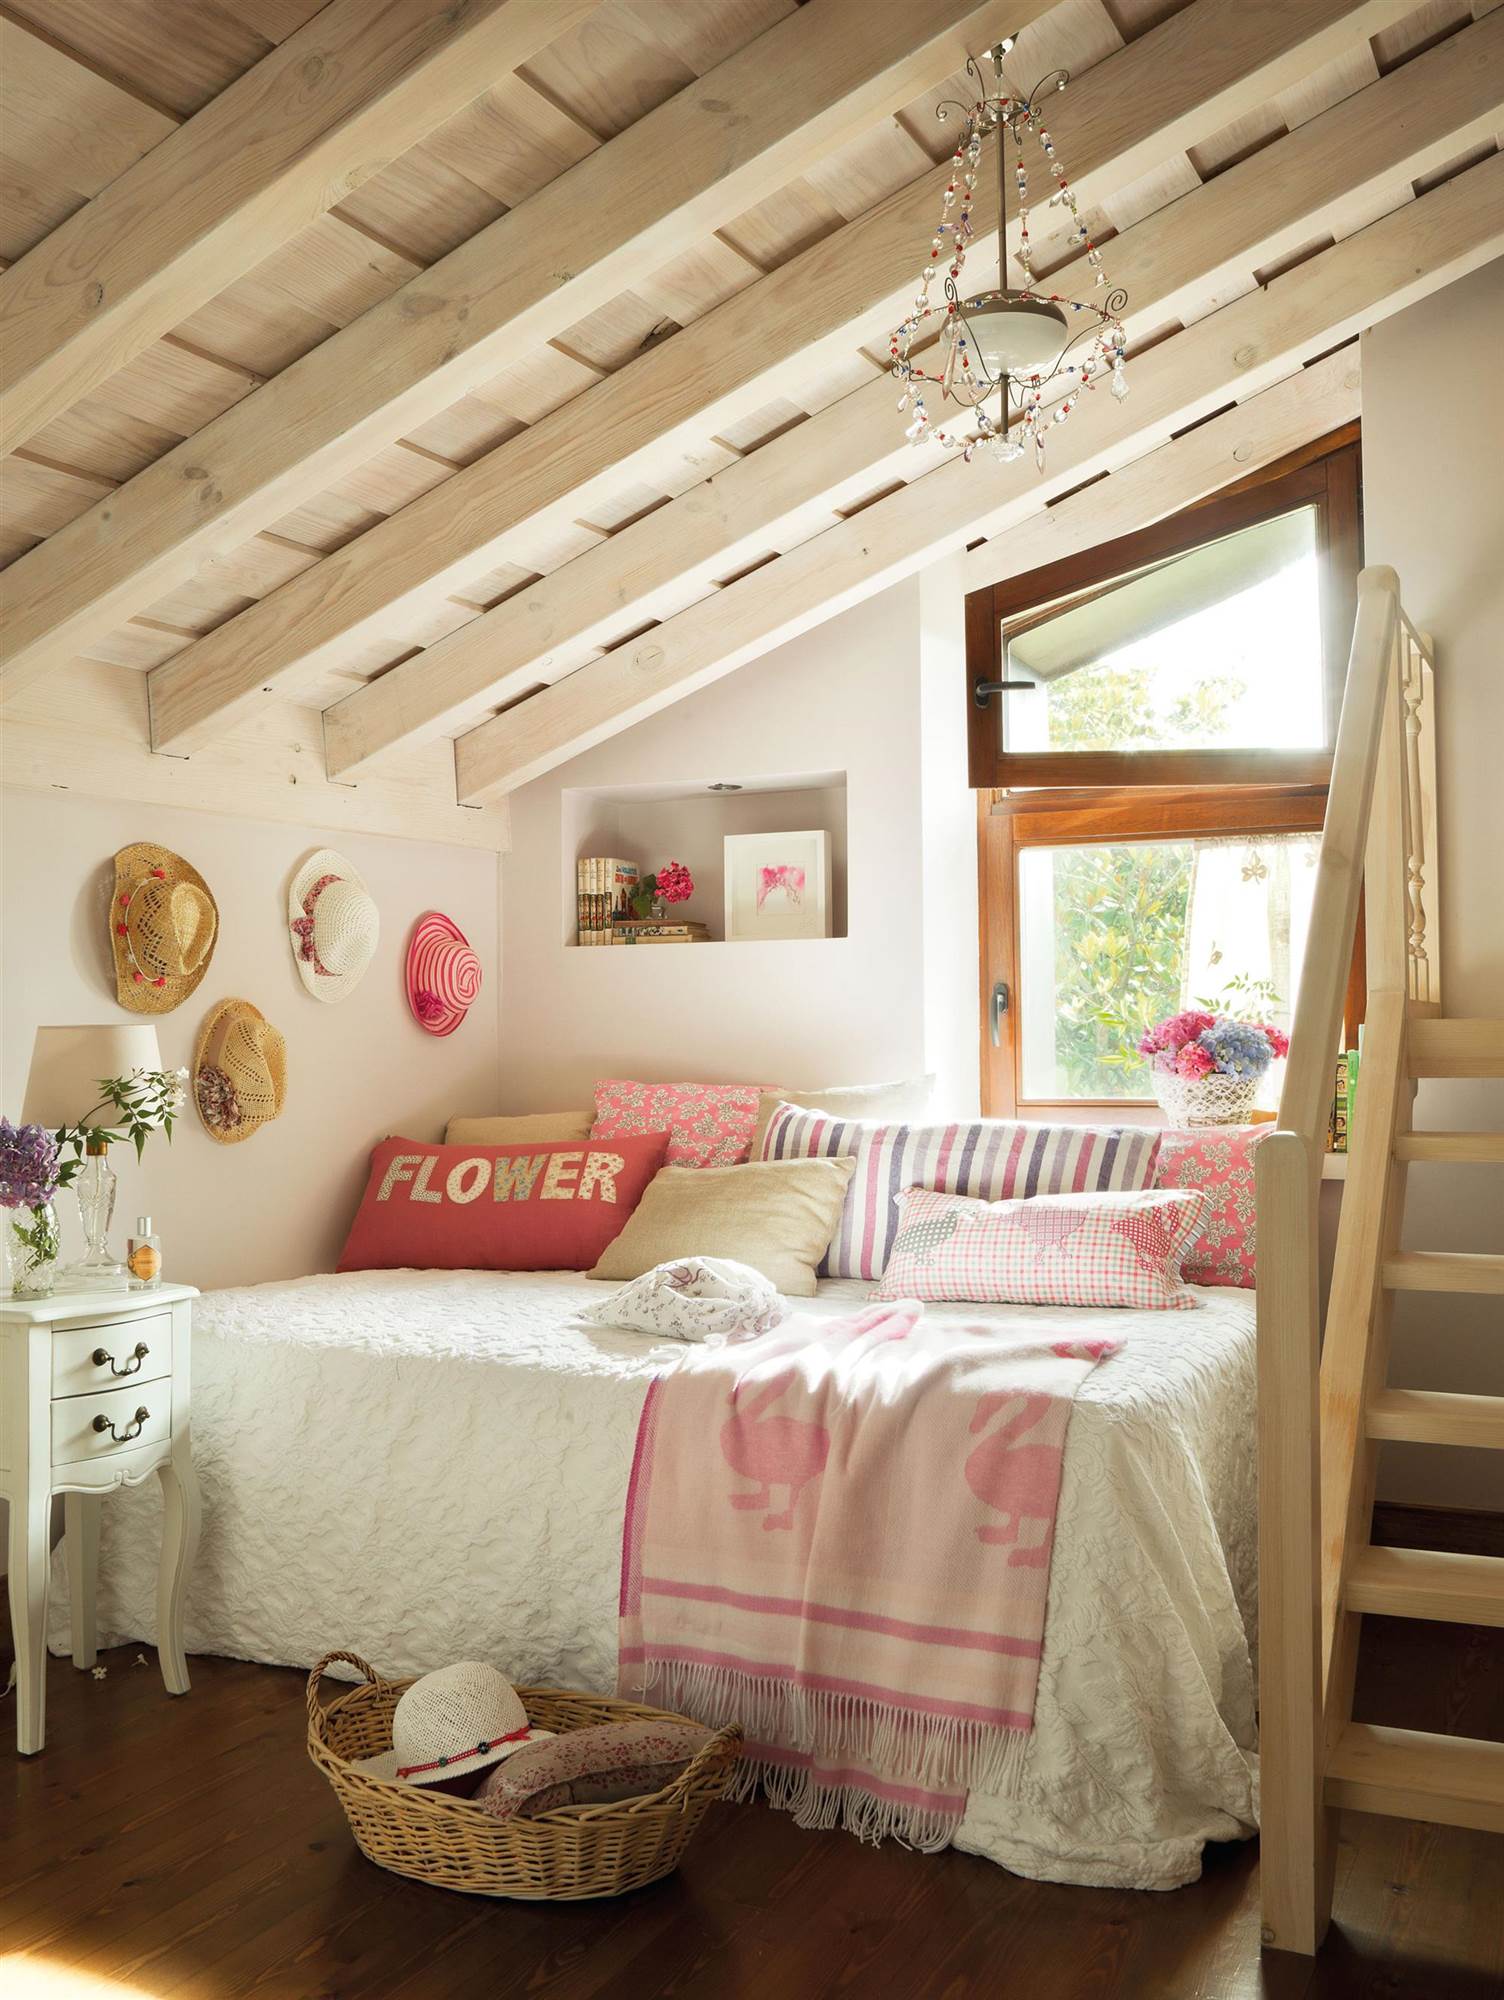 Dormitorio infantil con vigas de madera en el techo abuhardillado.